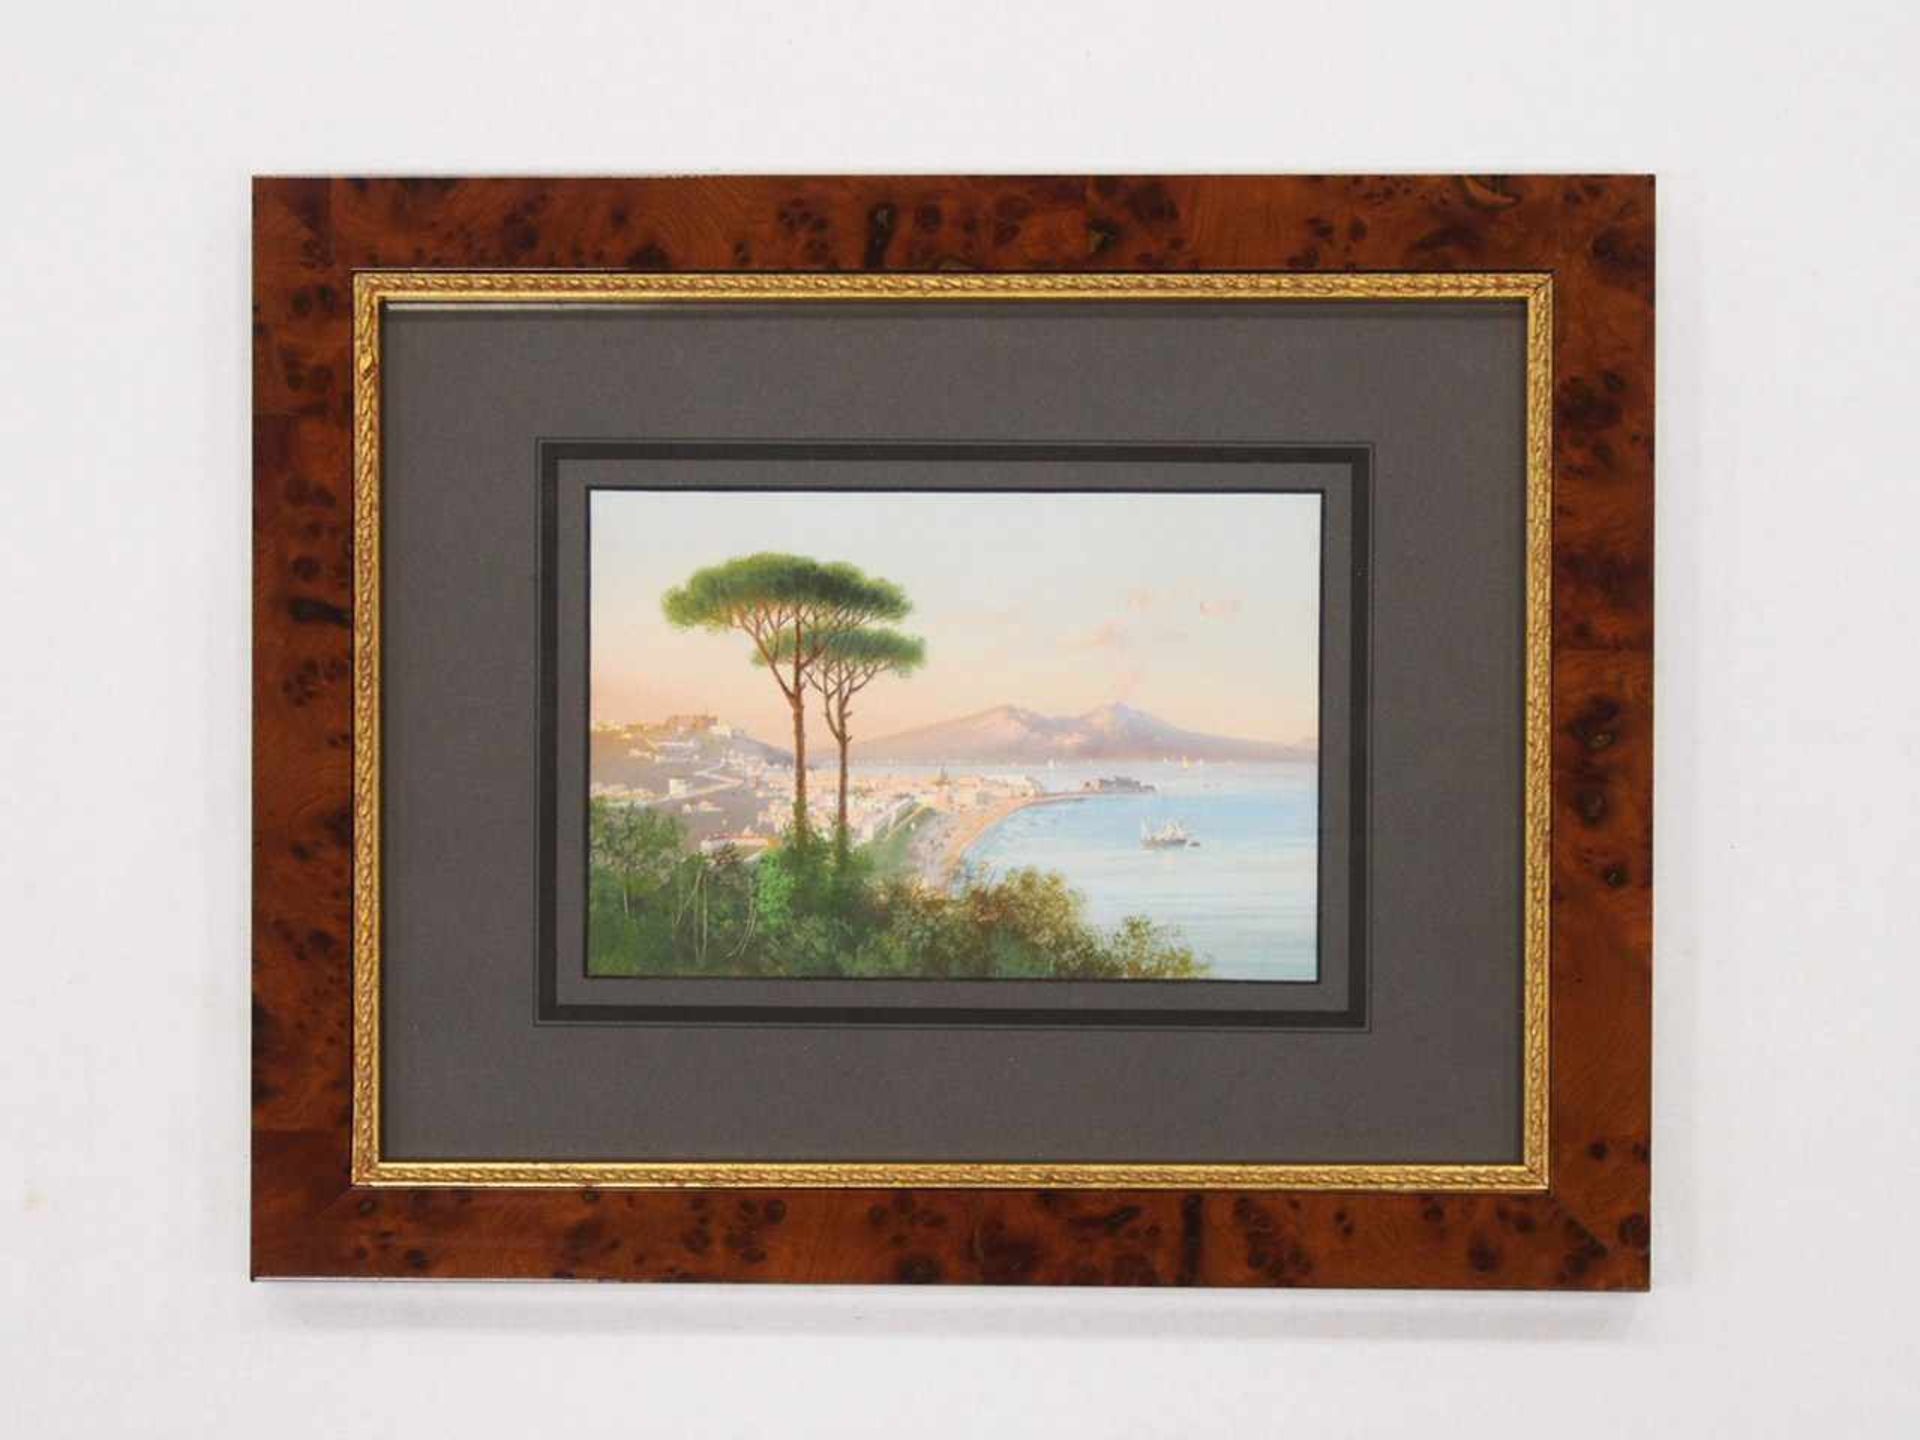 ITALIENISCHER MEISTERum 1900Golf von SorrentGouache auf Papier, 15 x 21,5 cm, gerahmt unter Glas und - Bild 2 aus 2